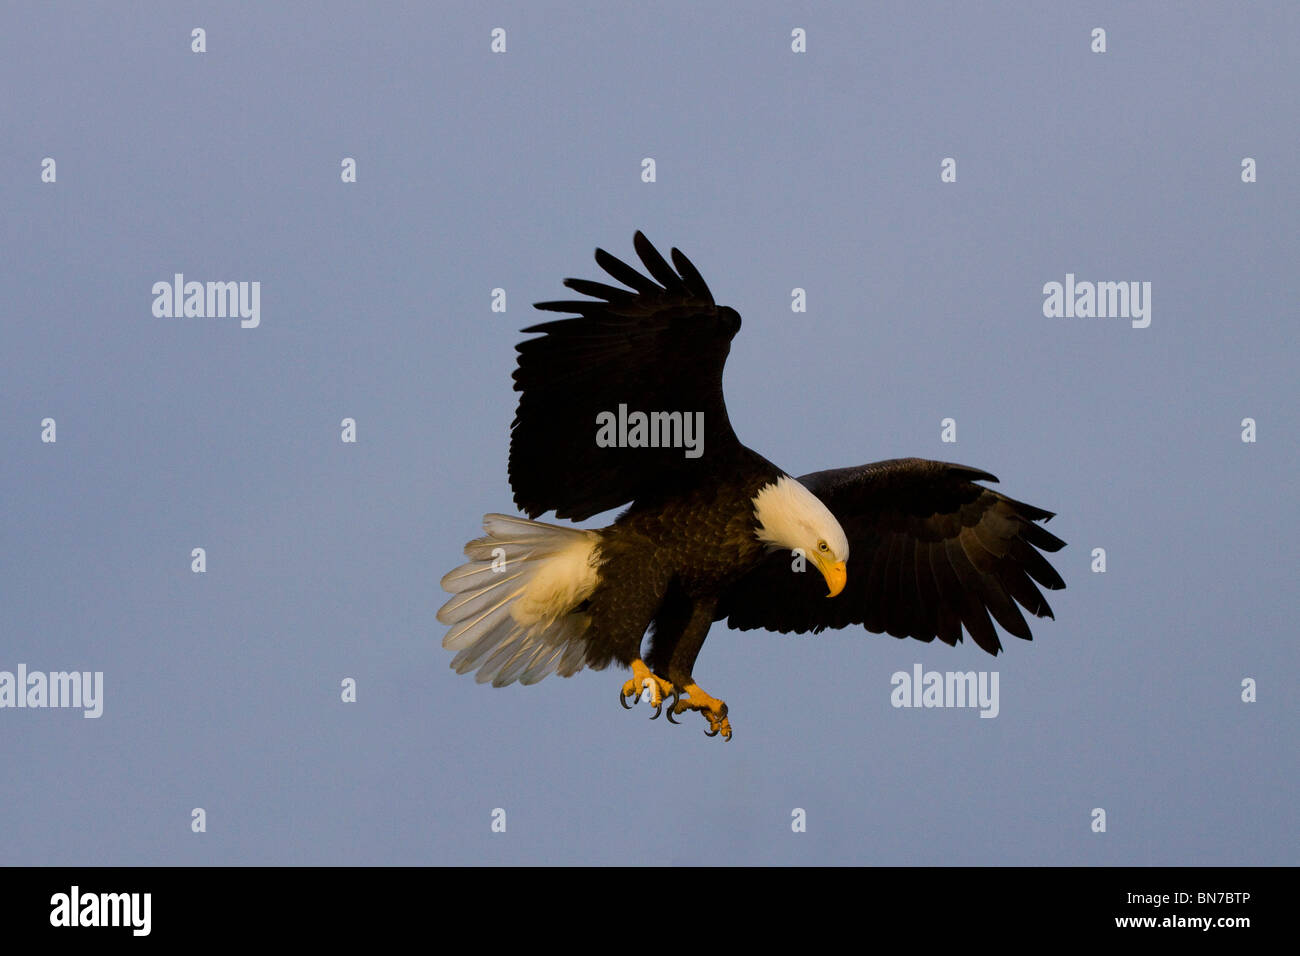 Aquila calva atterraggio con ali stese durante il periodo invernale in Omero, Alaska. Foto Stock